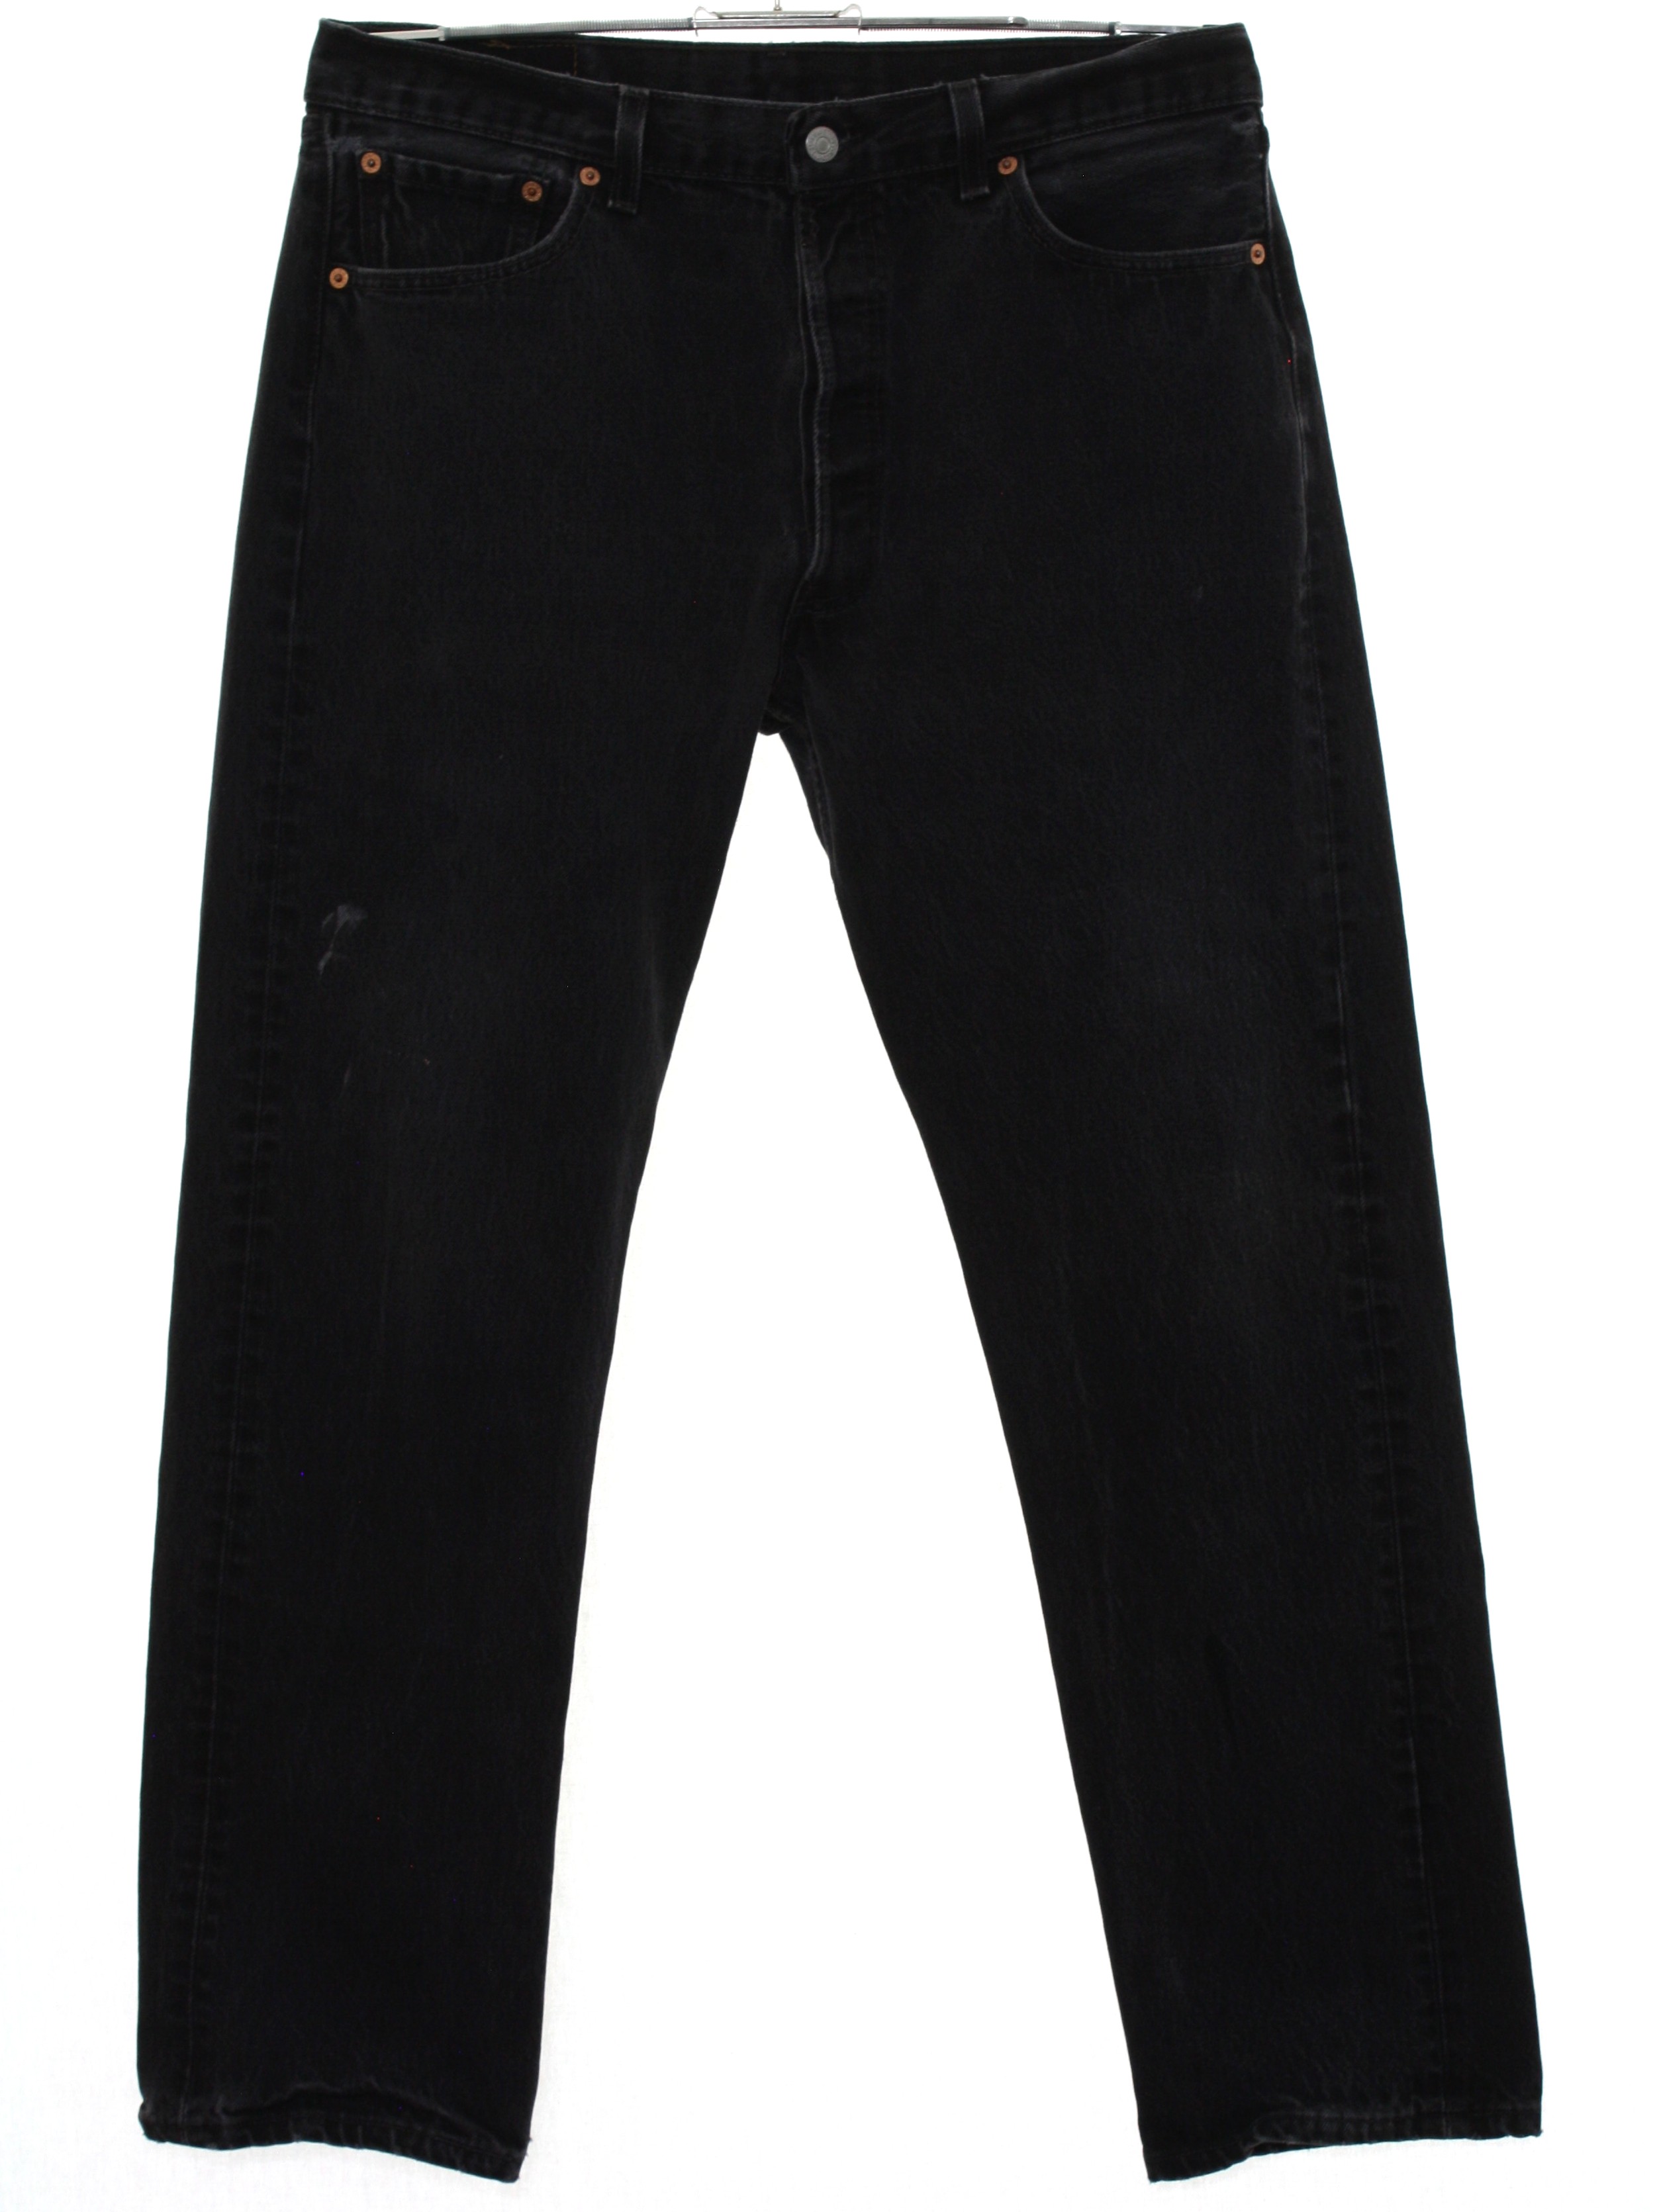 Eighties Levis Pants: 80s -Levis- Mens black cotton denim jeans with ...